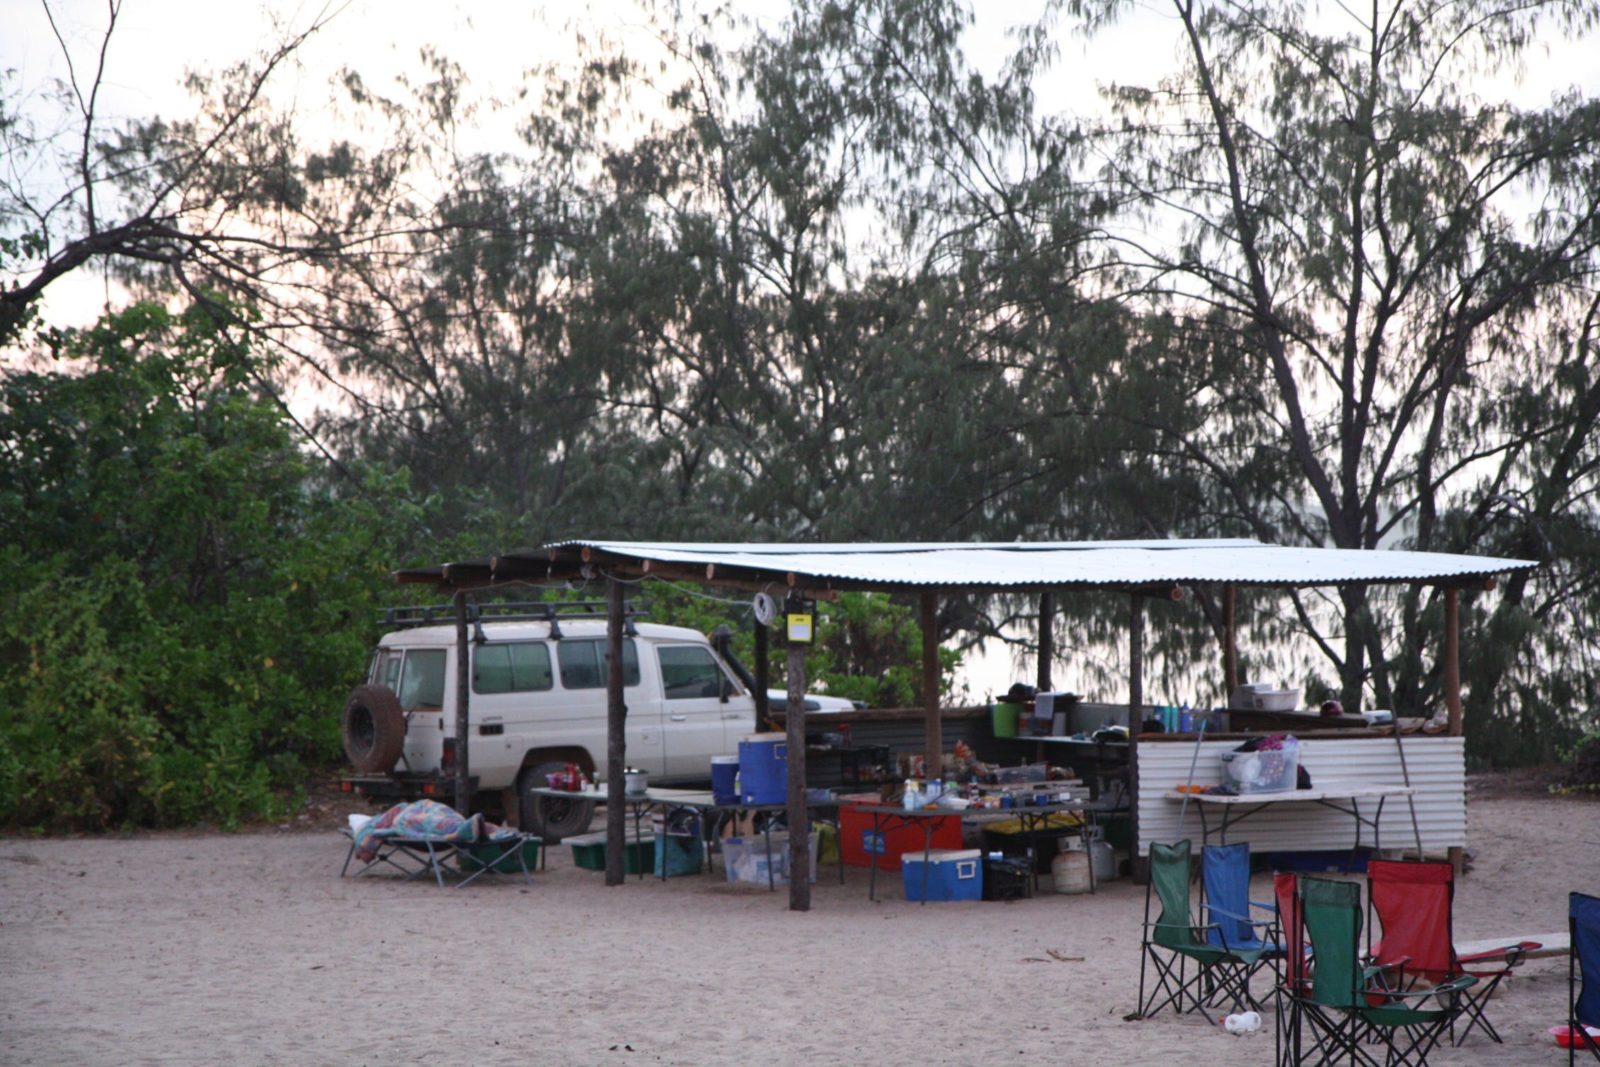 Camp set up at Bukudal homeland